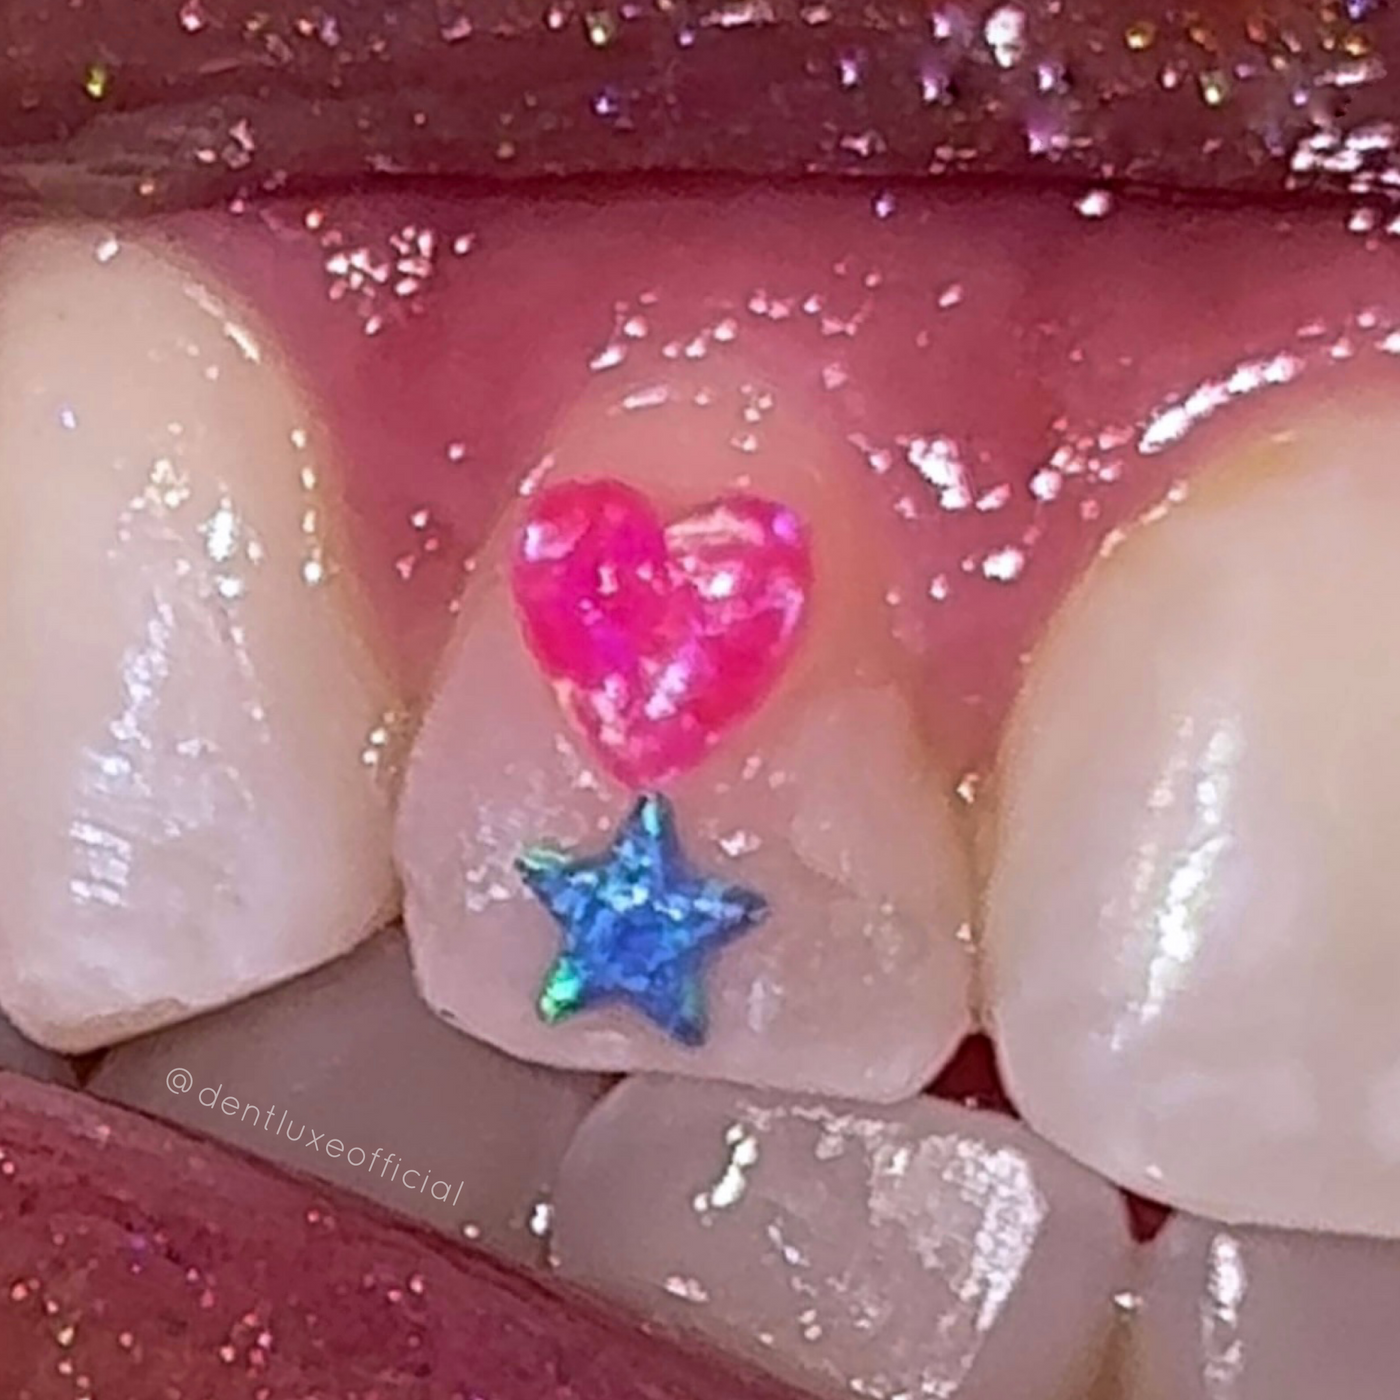 Star Opal Tooth Gems